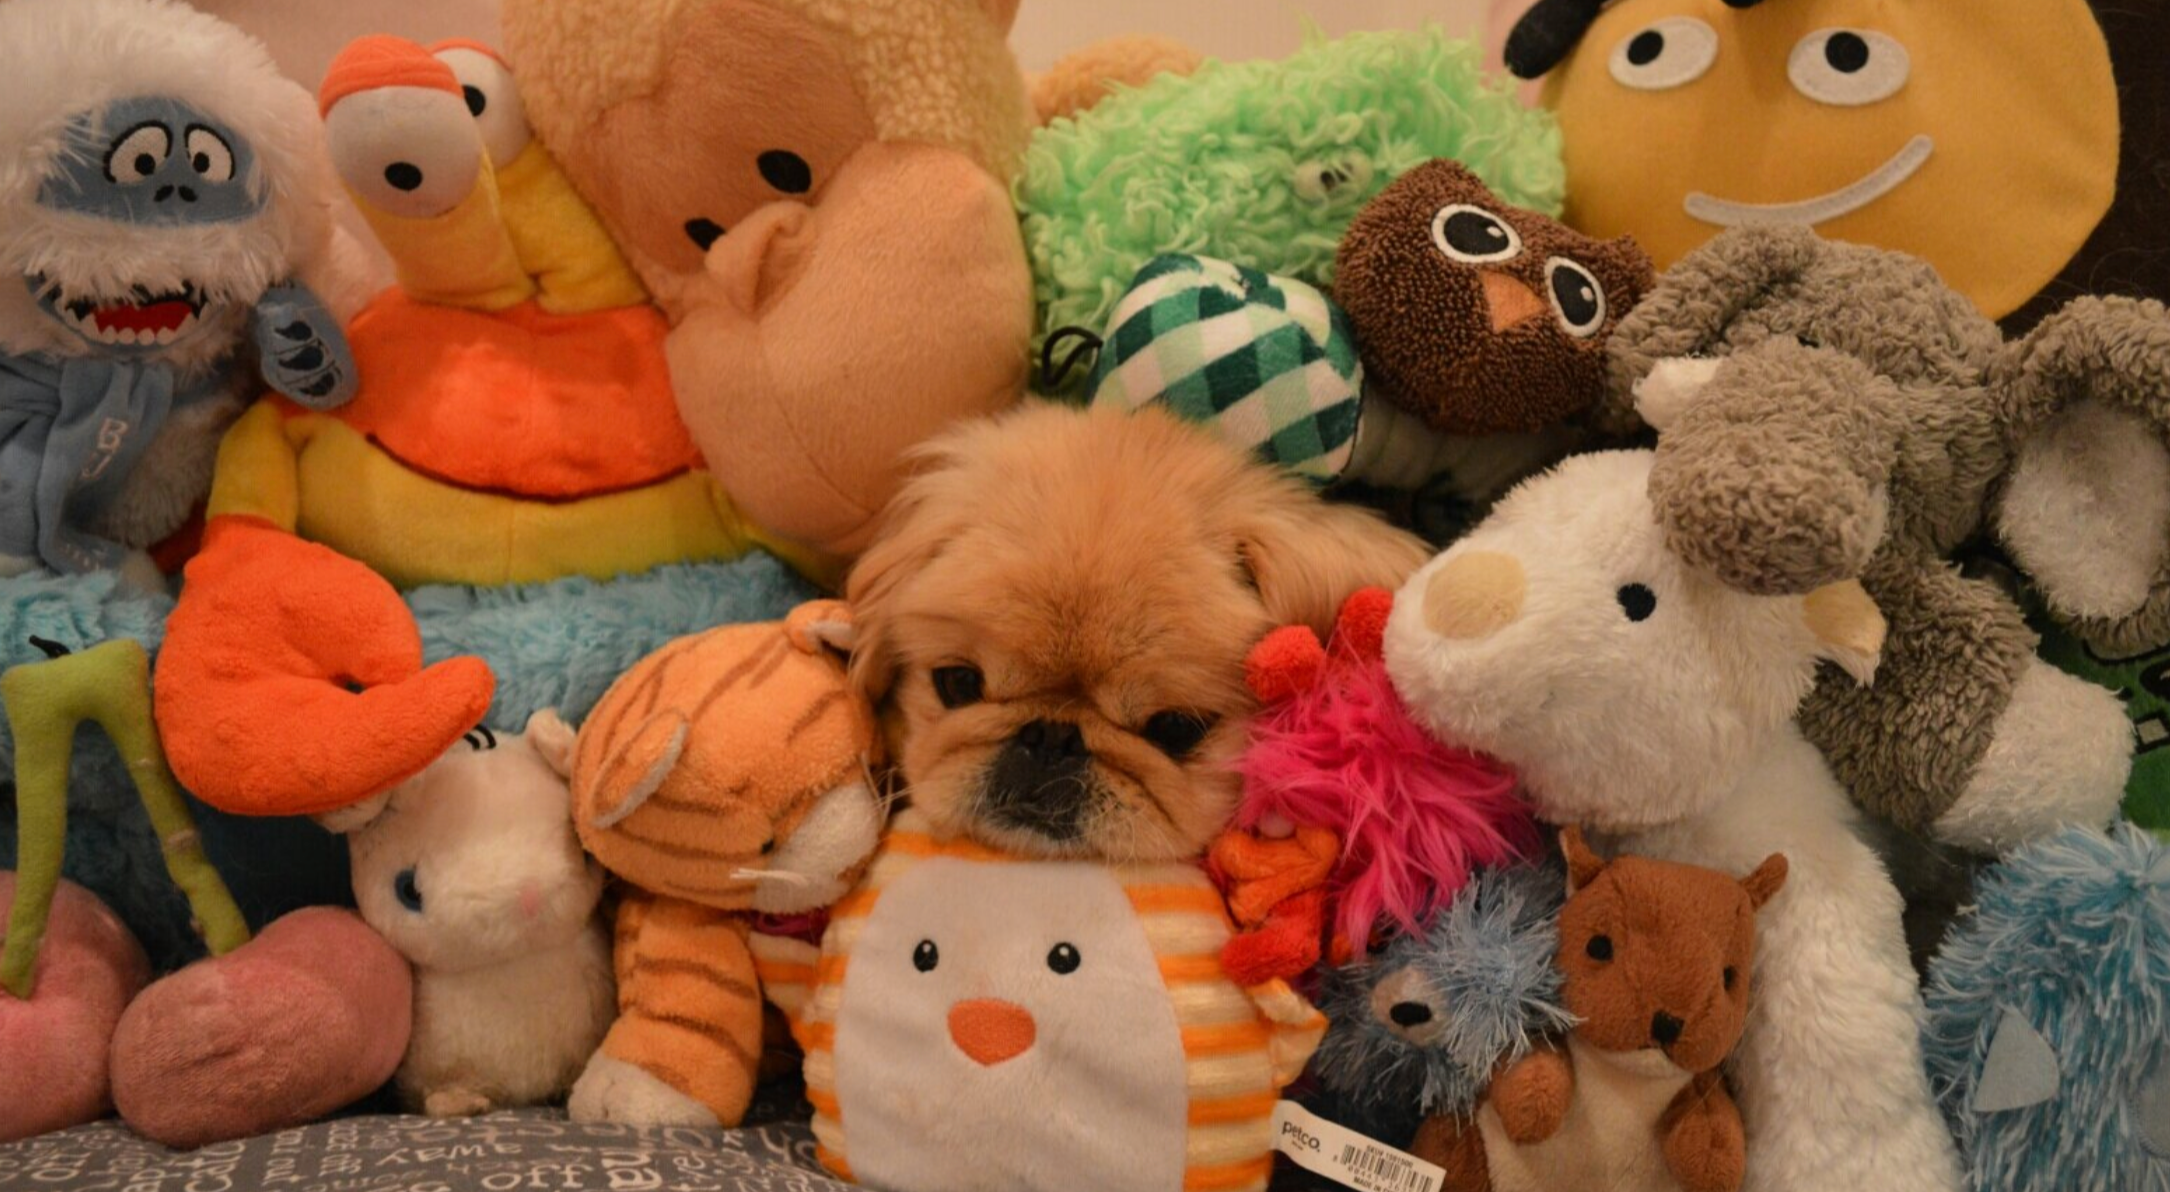 Freddie dog hiding amongst a bunch of stuffed animals.